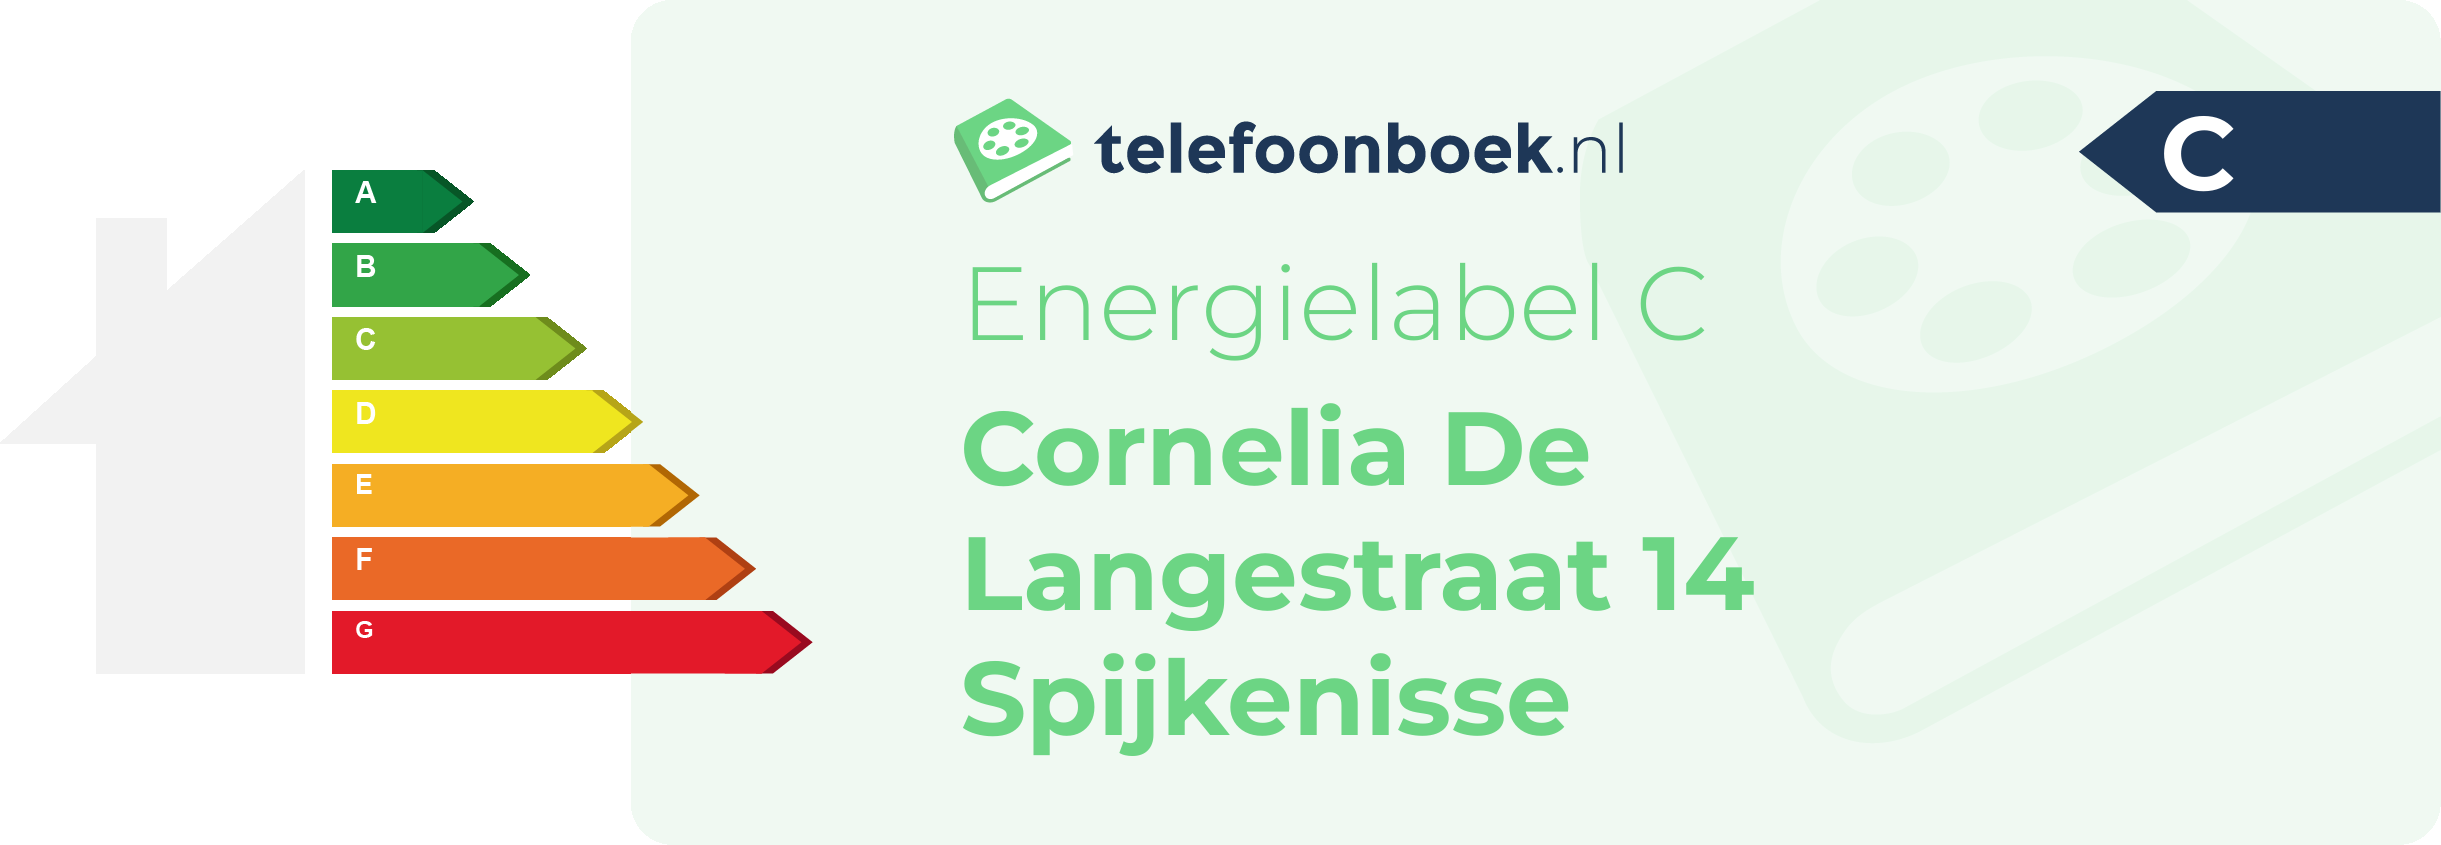 Energielabel Cornelia De Langestraat 14 Spijkenisse